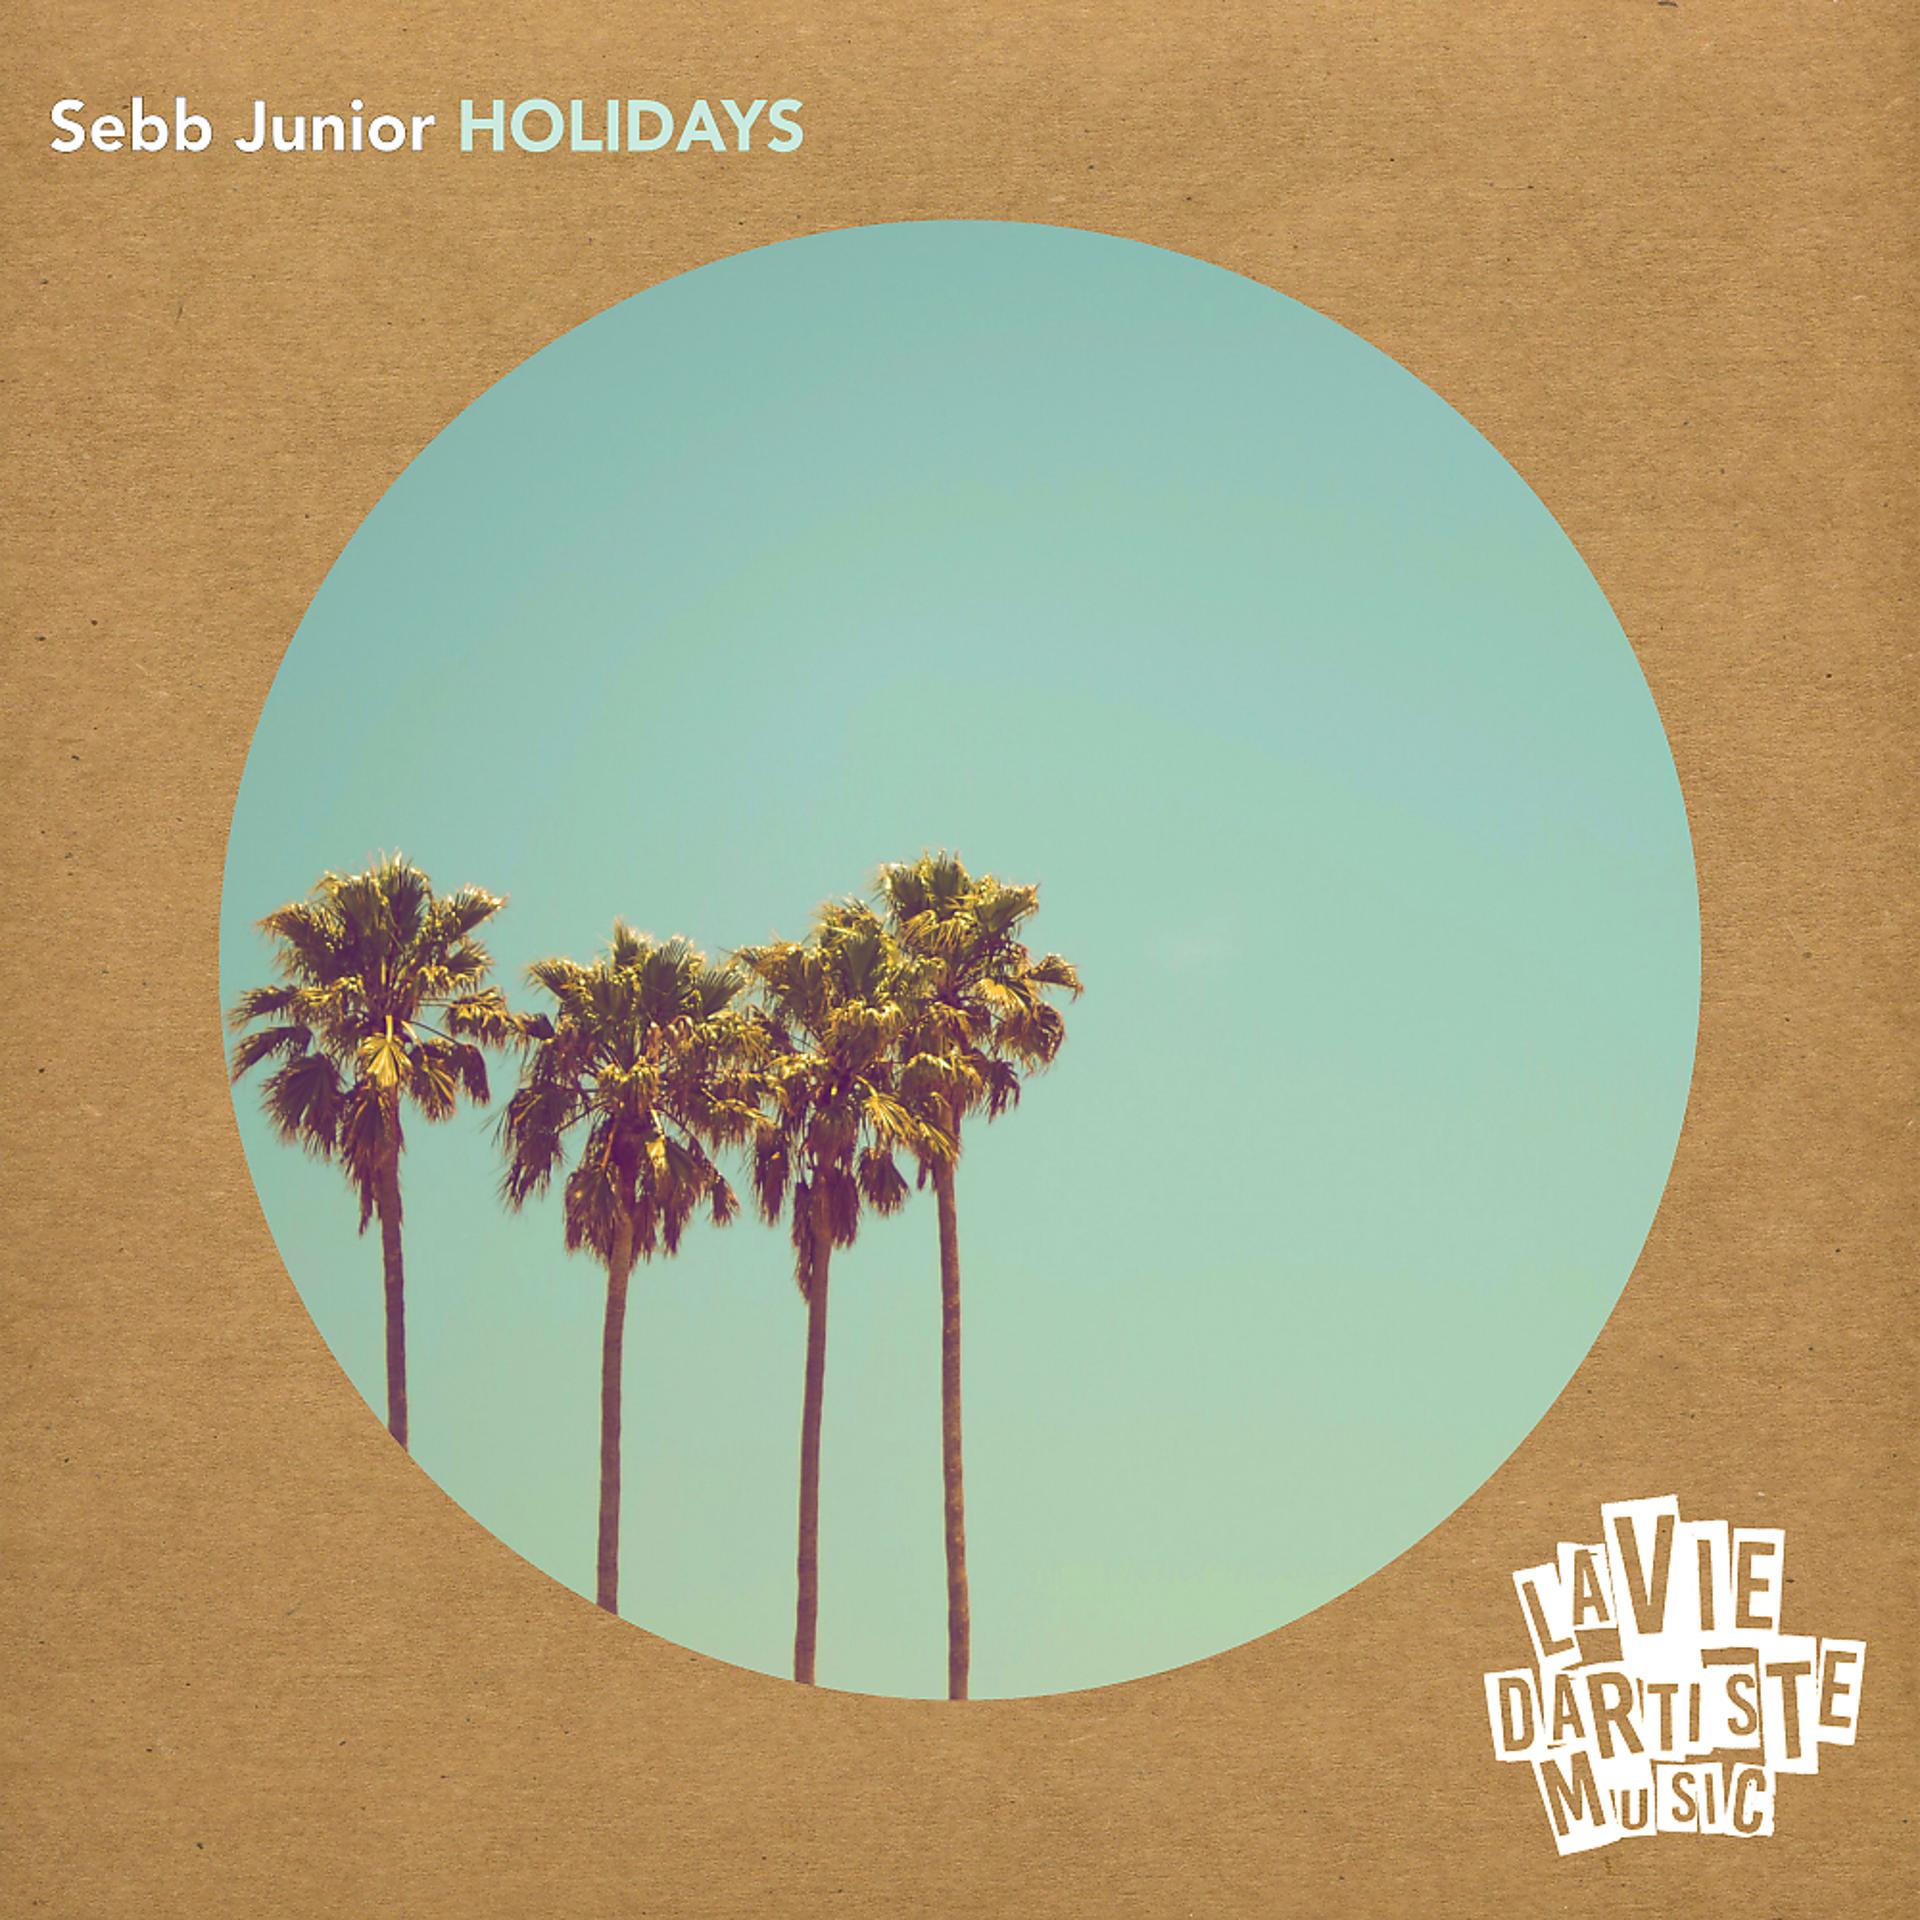 Постер альбома Holidays